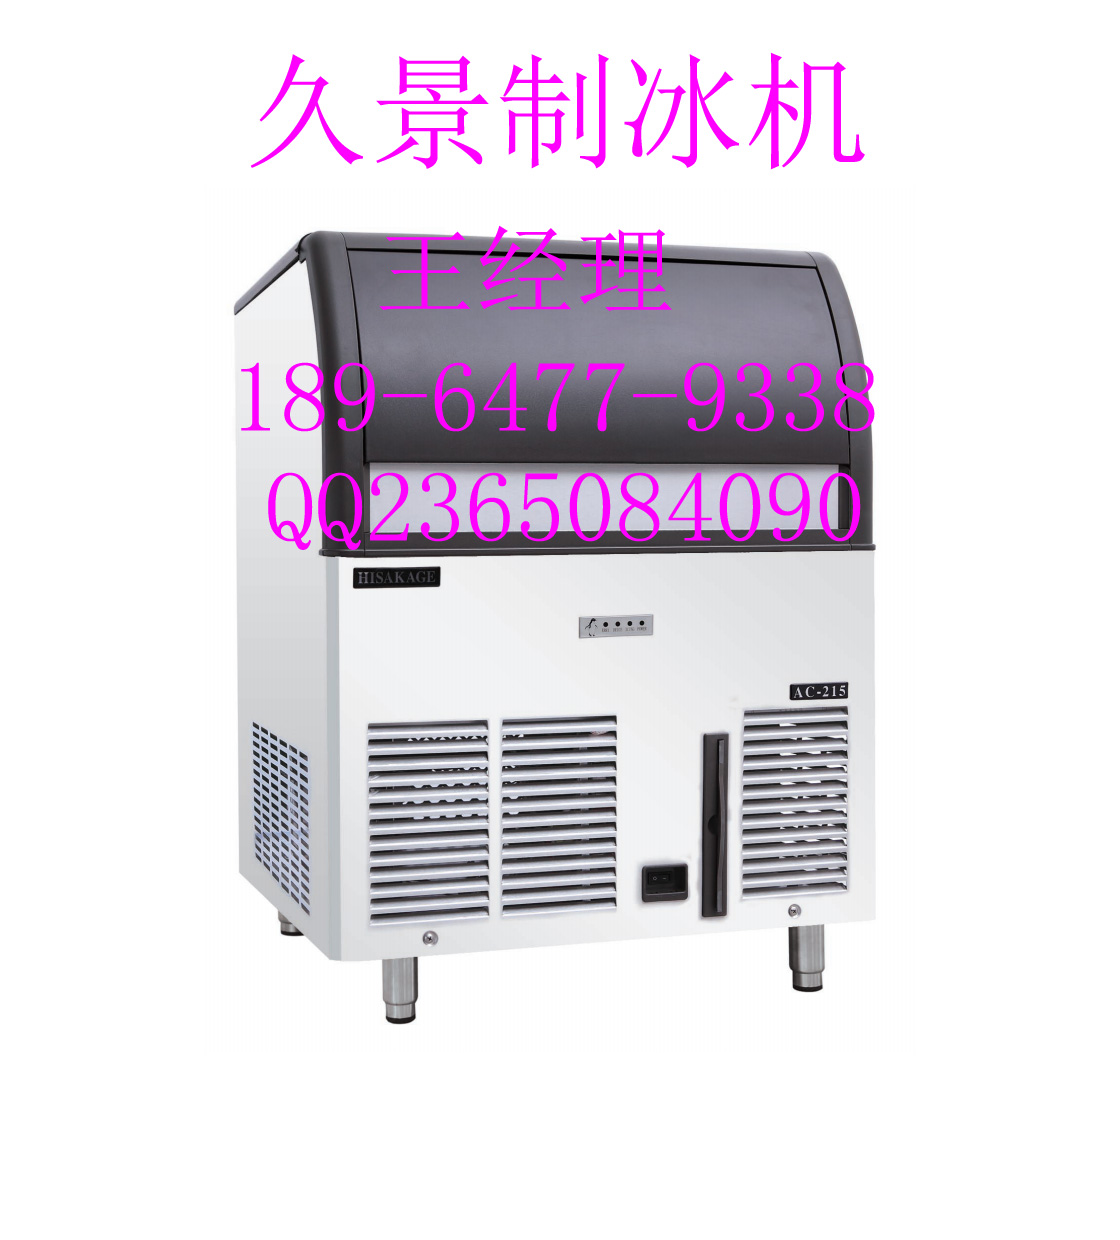 烧烤设备/制冰机/制冰机价格